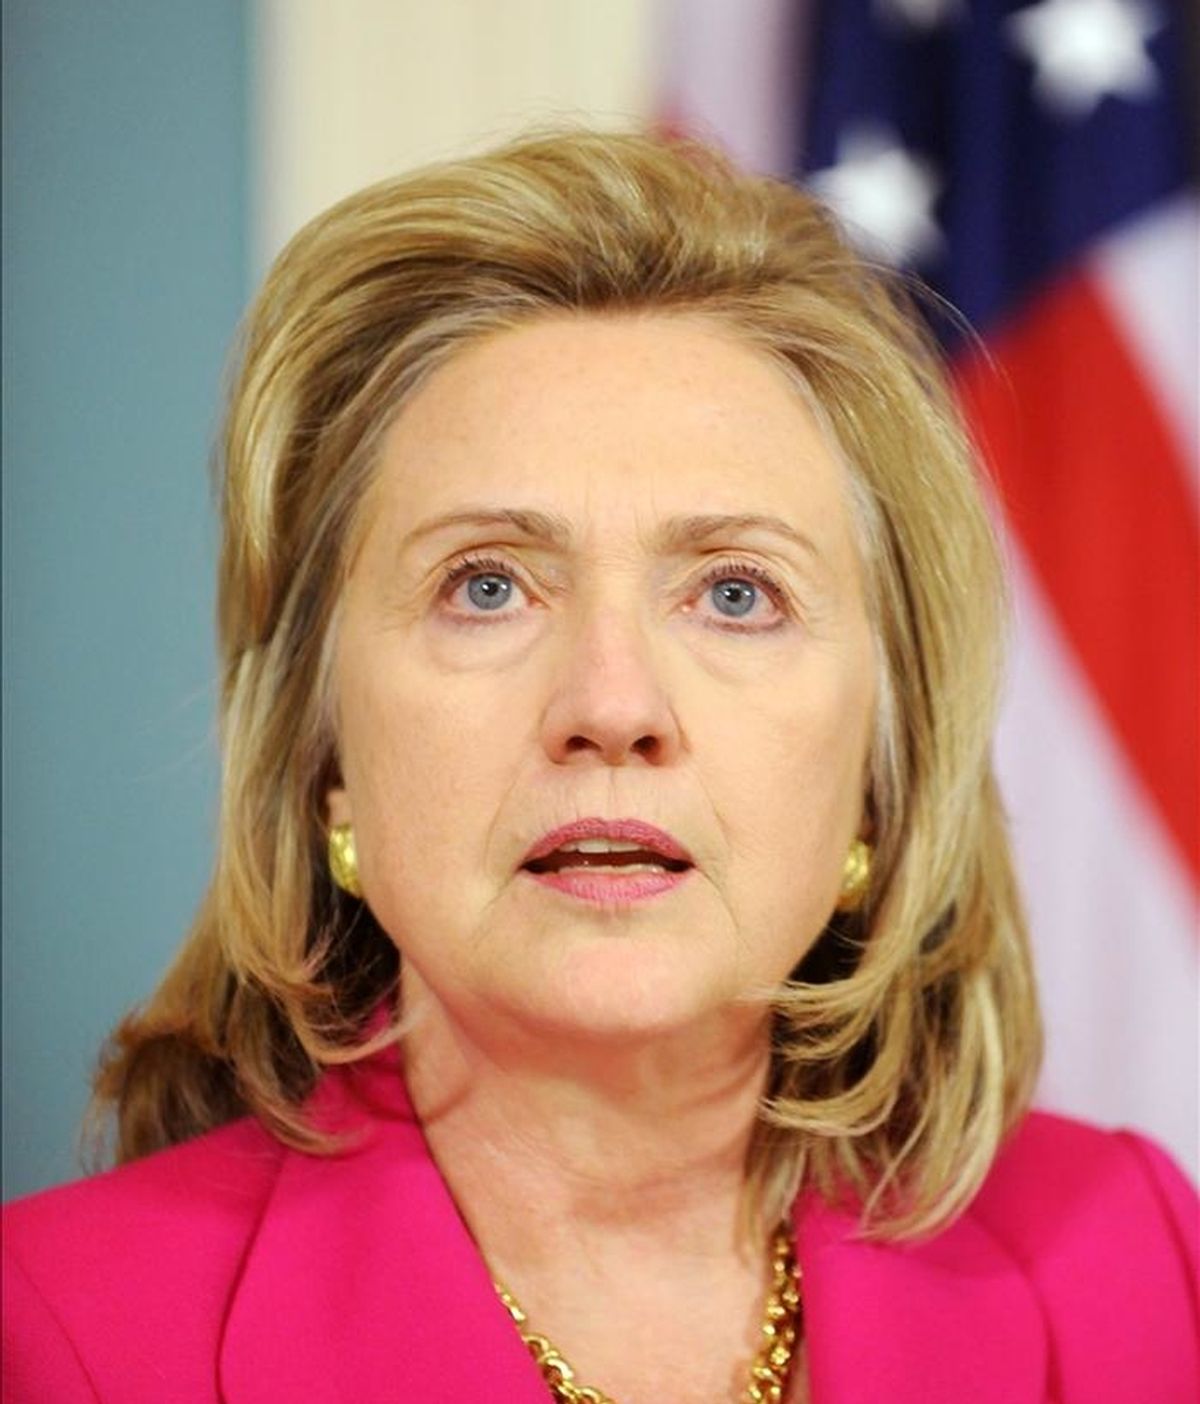 La secretaria de Estado, Hillary Clinton, recordó en una comparecencia el triunfo histórico que supone la muerte de Bin Laden para la lucha contra el terrorismo, pero aseguró que el combate continua. EFE/Archivo